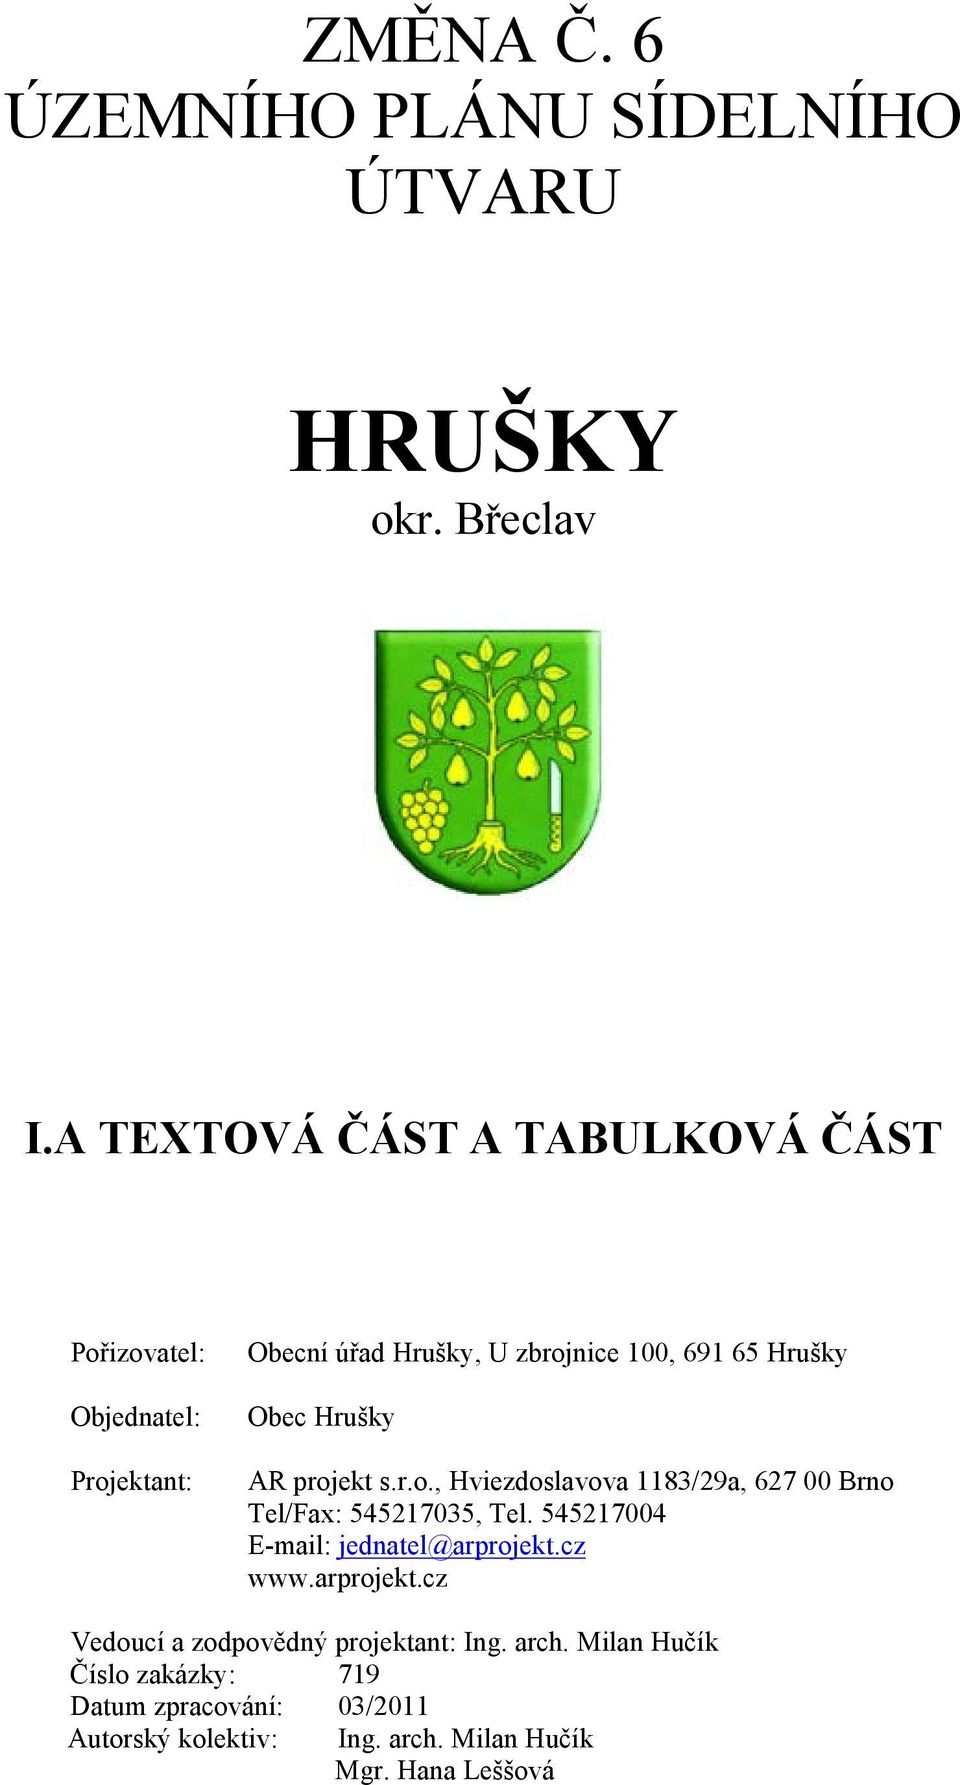 Hrušky Obec Hrušky AR projekt s.r.o., Hviezdoslavova 1183/29a, 627 00 Brno Tel/Fax: 545217035, Tel. 545217004 www.